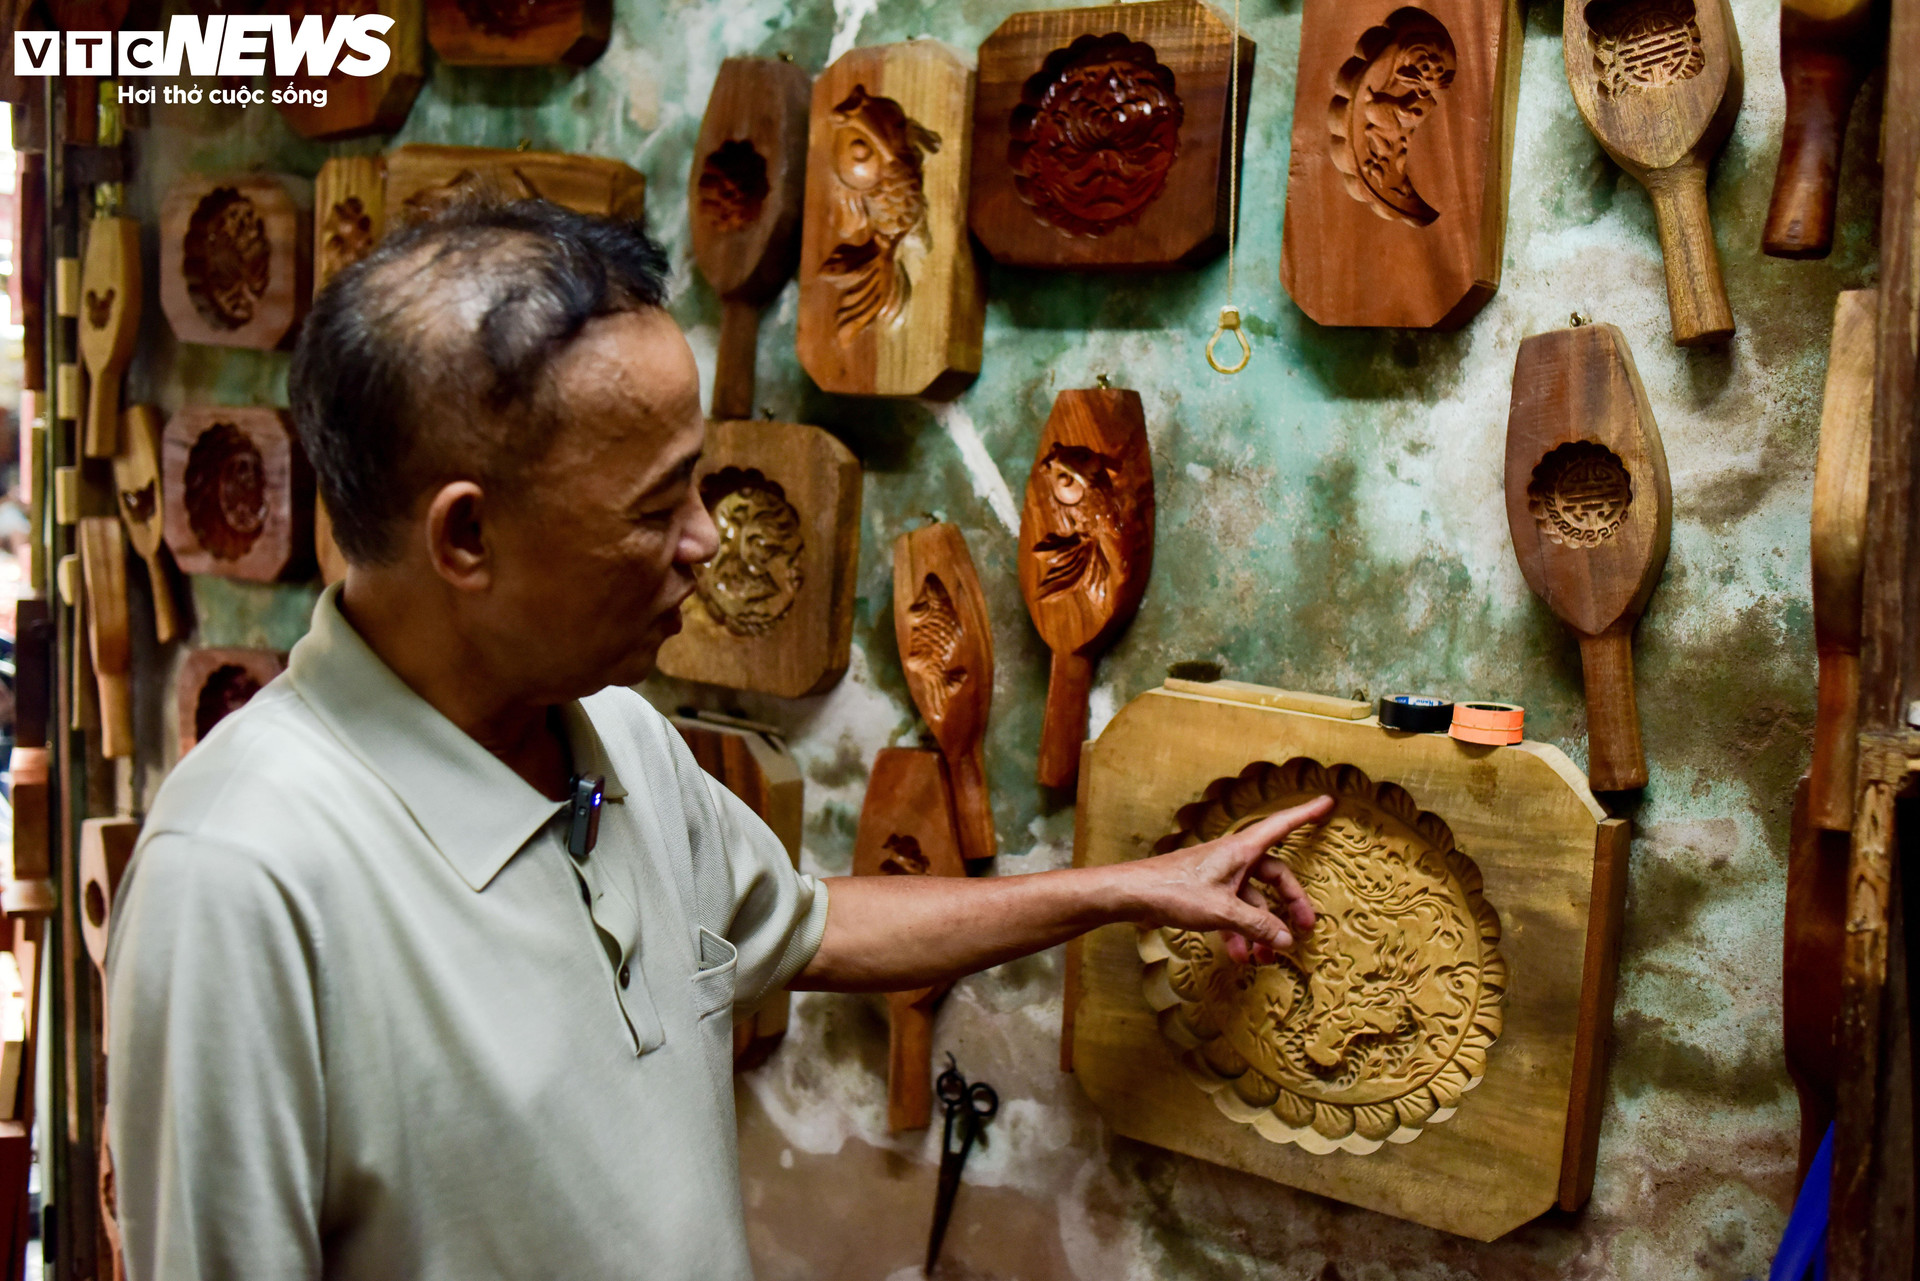 Đến nay, ông Quang đã có hơn 40 năm làm nghề đúc khuôn bánh.